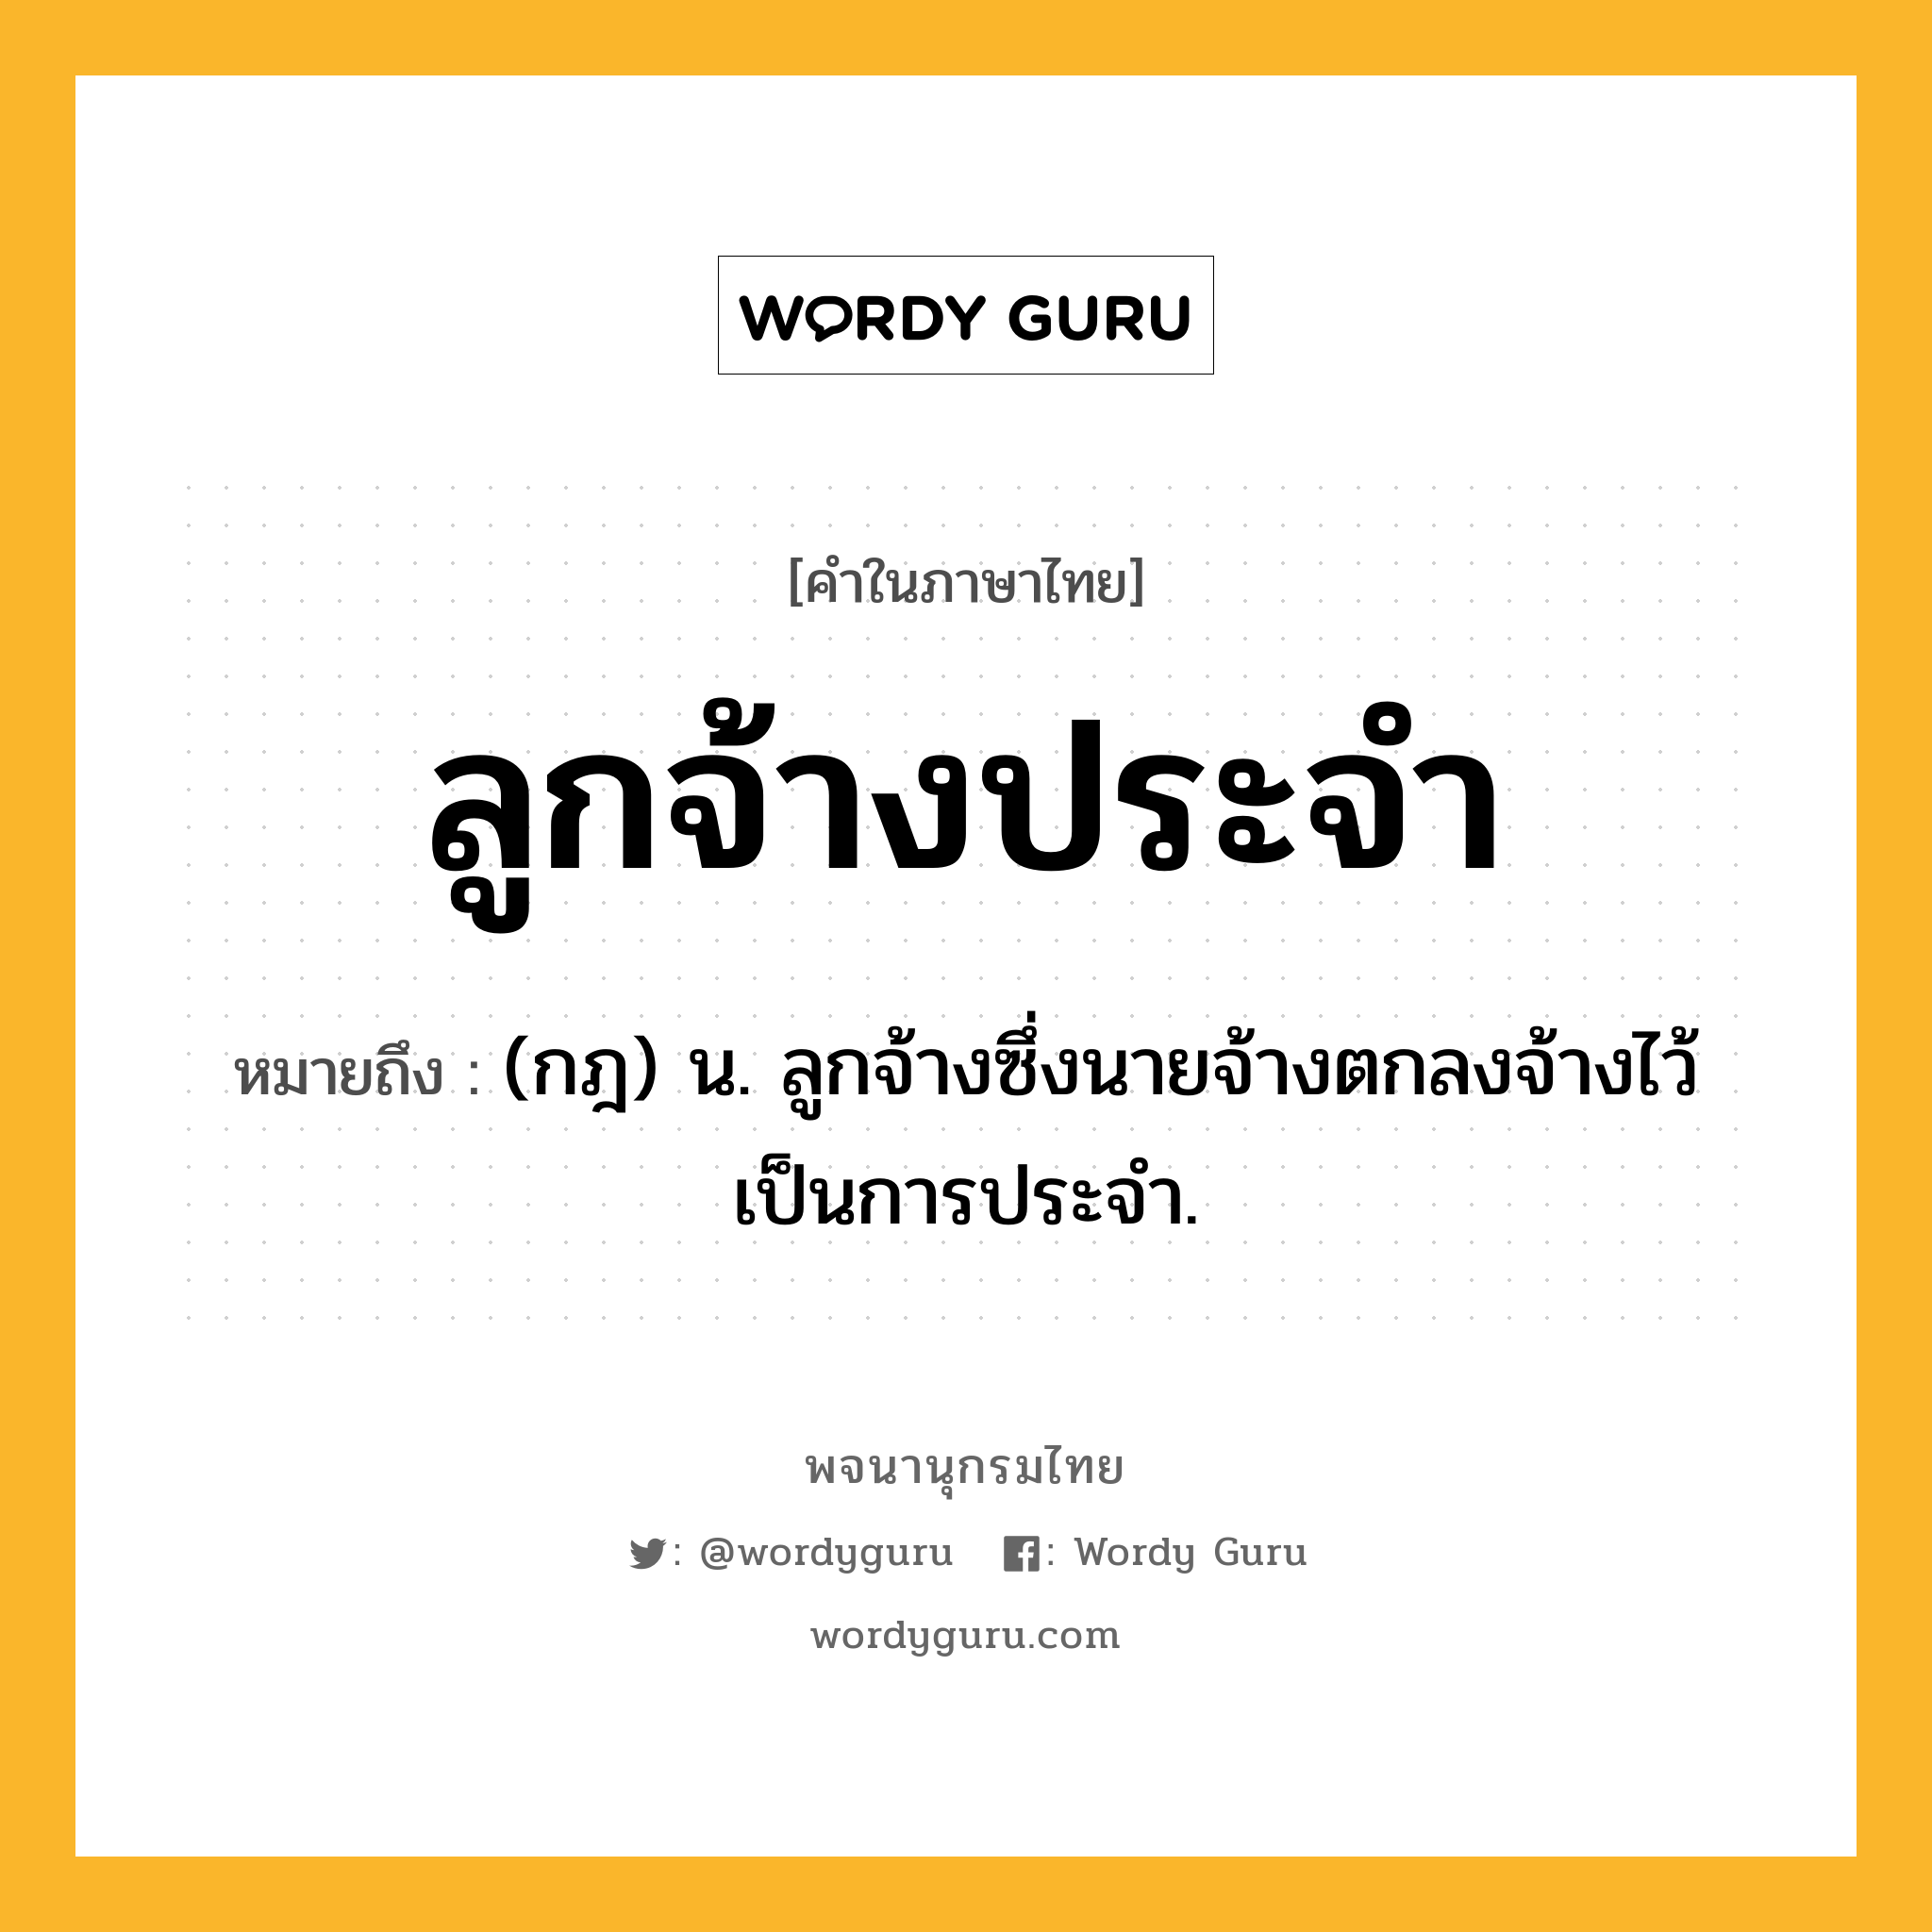 ลูกจ้างประจำ ความหมาย หมายถึงอะไร?, คำในภาษาไทย ลูกจ้างประจำ หมายถึง (กฎ) น. ลูกจ้างซึ่งนายจ้างตกลงจ้างไว้เป็นการประจำ.